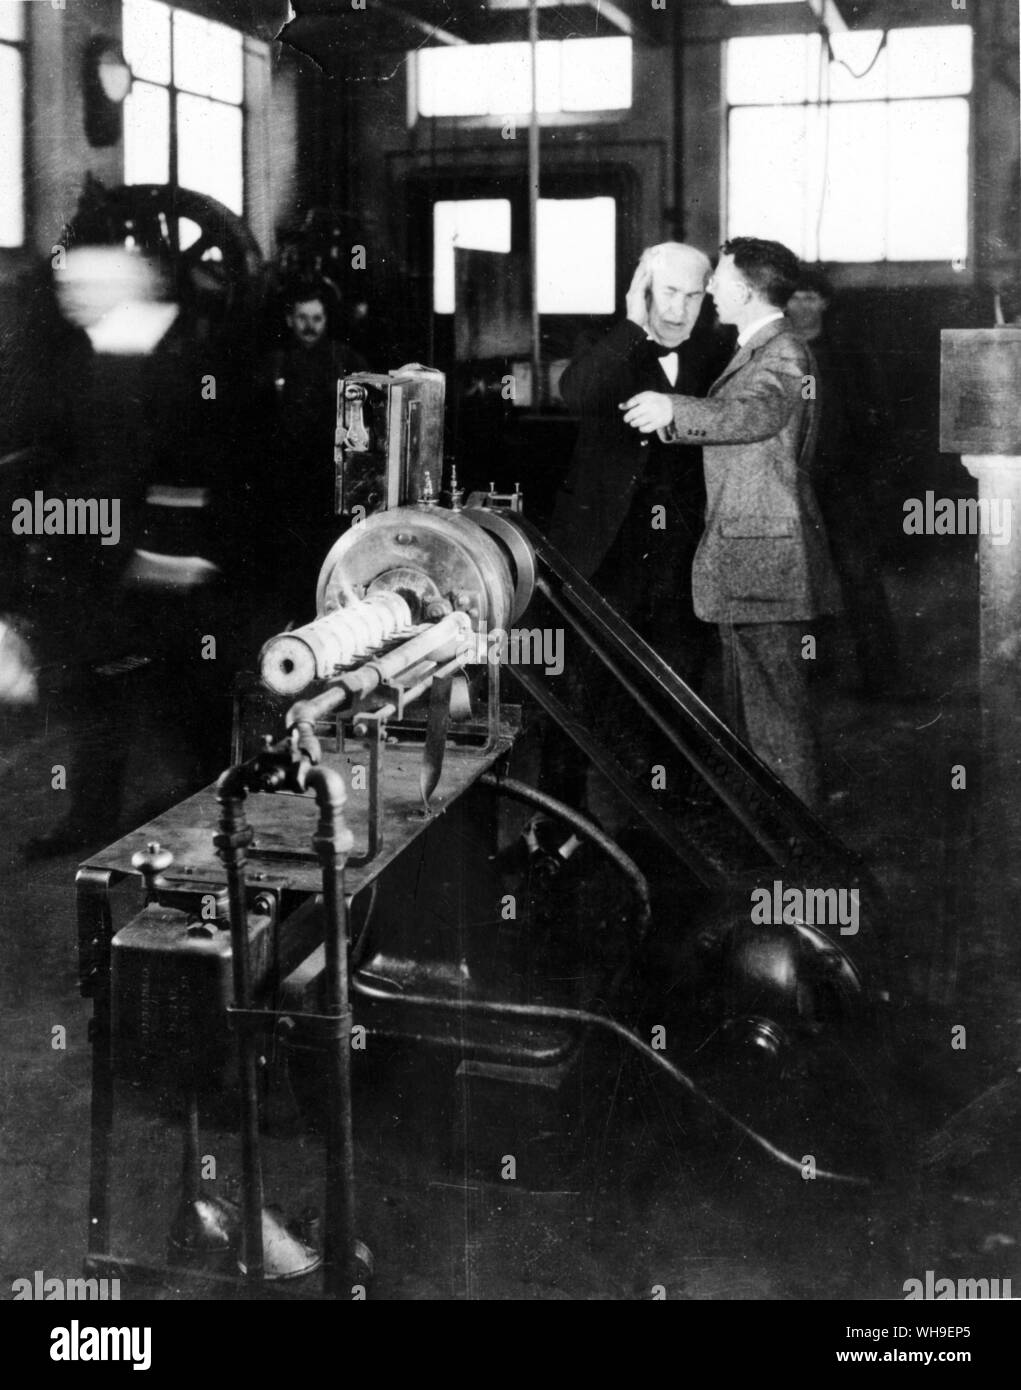 Thomas A Edison (1847-1931), scientifique et inventeur américain en visite dans le laboratoire de recherche de General Electric à Schenectady, New York en 1914. Dr William Coolidge explique, directeur adjoint, explique comment le tungstène est effectuée au moyen de l'appareil à l'avant-plan. Banque D'Images